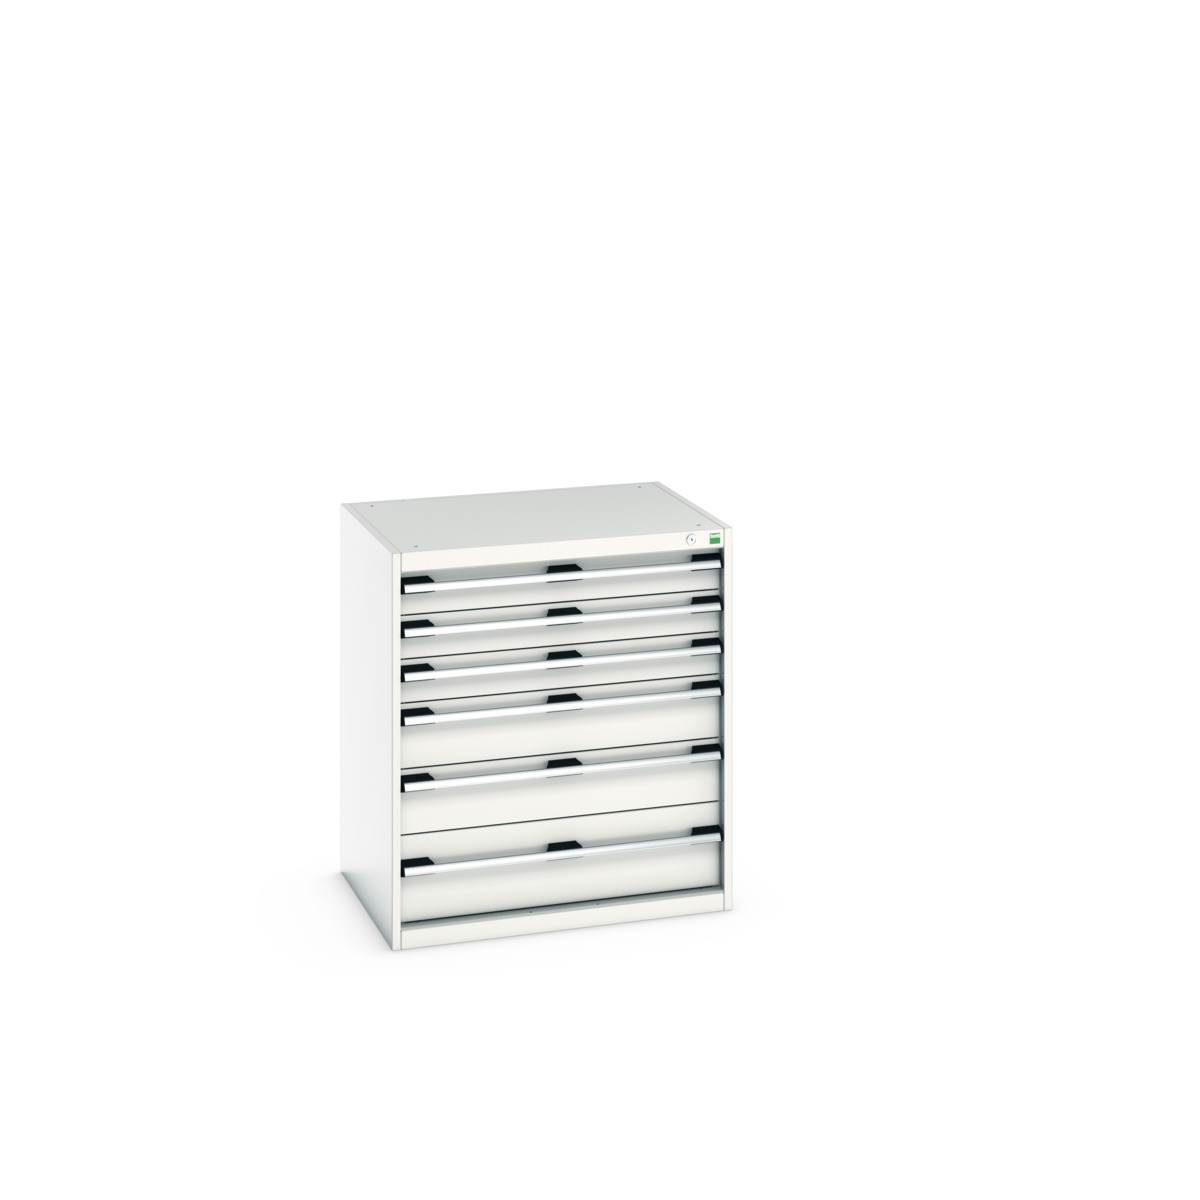 40020147.16V - cubio drawer cabinet